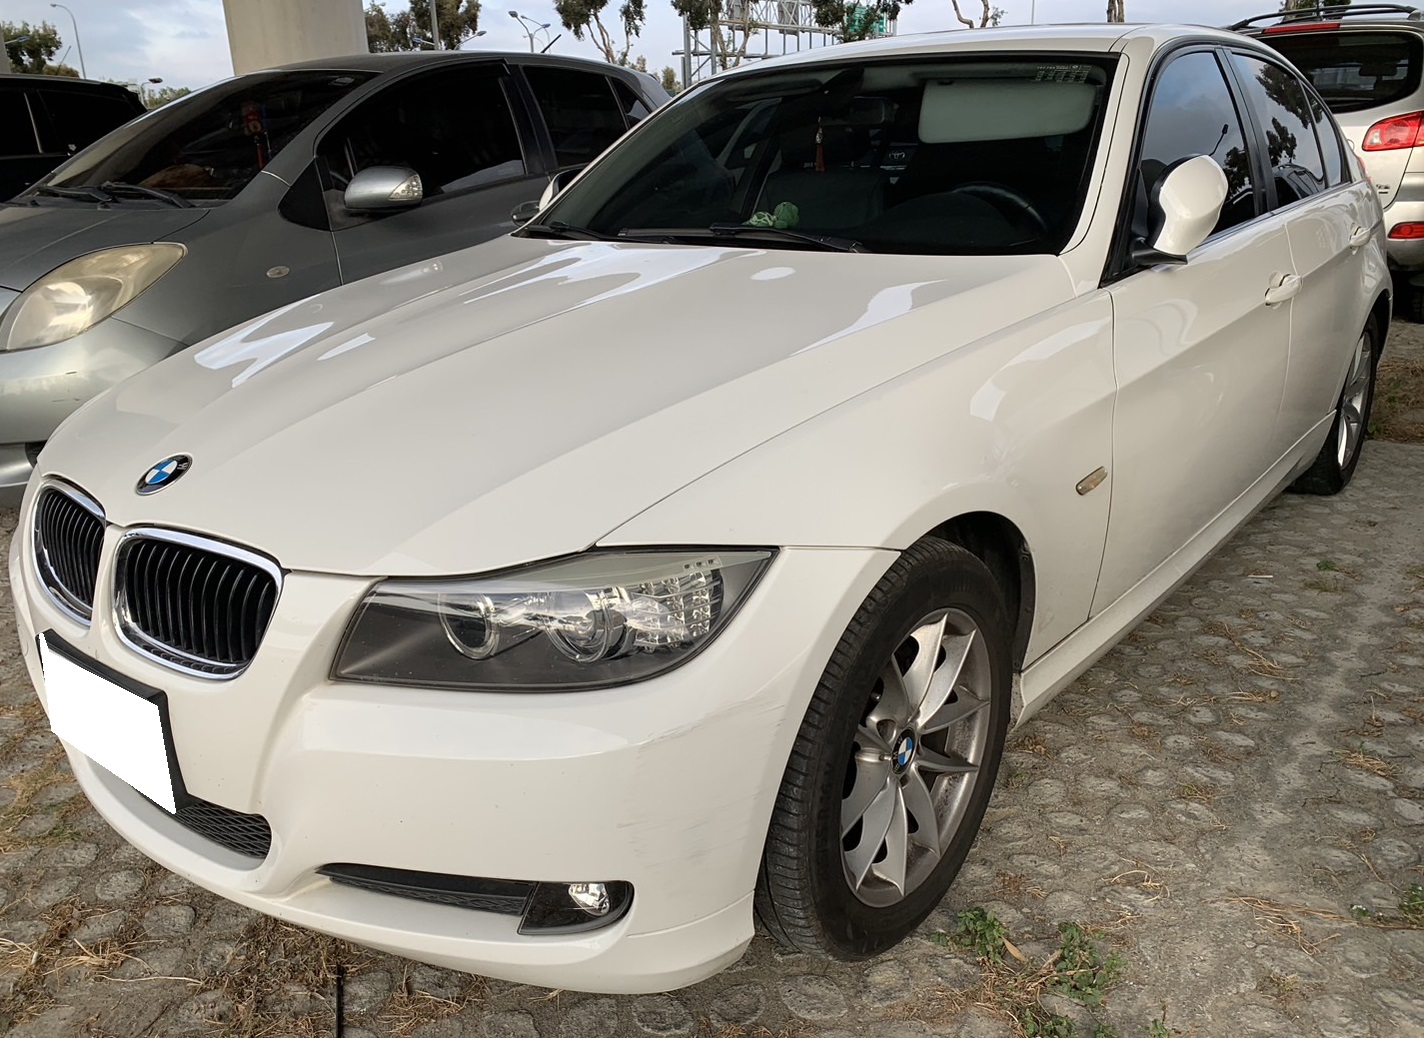 2010 BMW 寶馬 3-series sedan